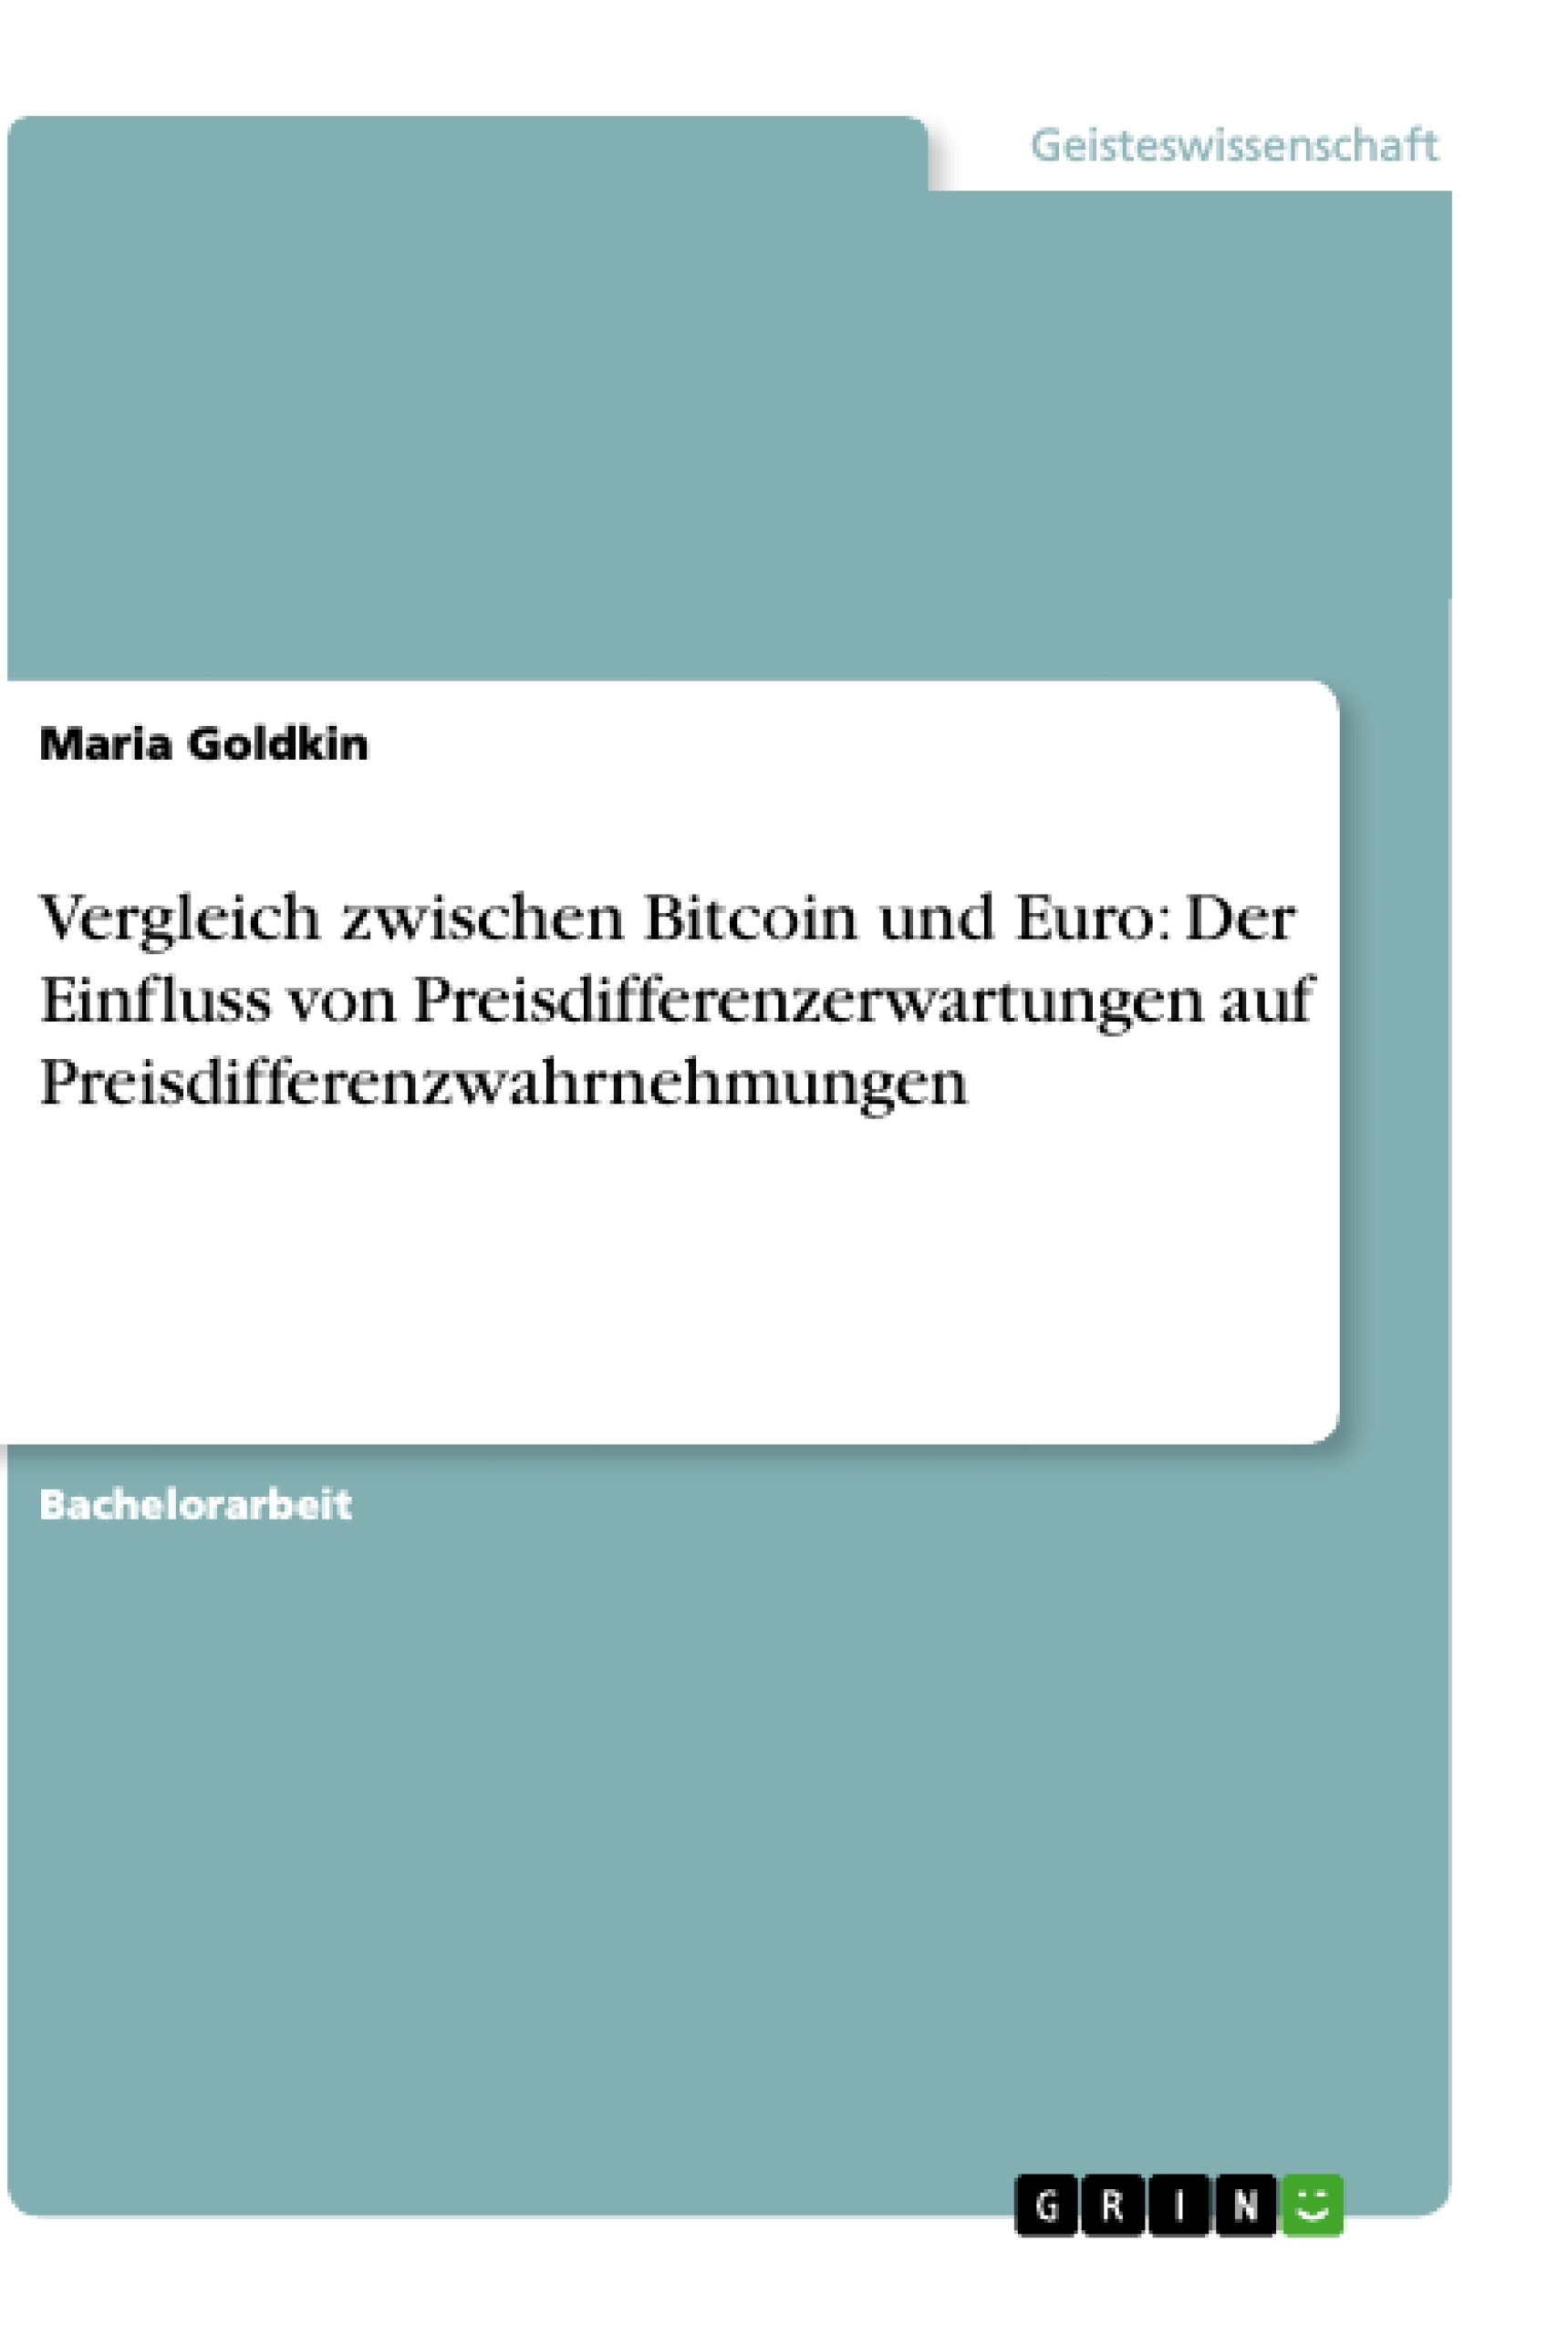 Title: Vergleich zwischen Bitcoin und Euro: Der Einfluss von Preisdifferenzerwartungen auf Preisdifferenzwahrnehmungen